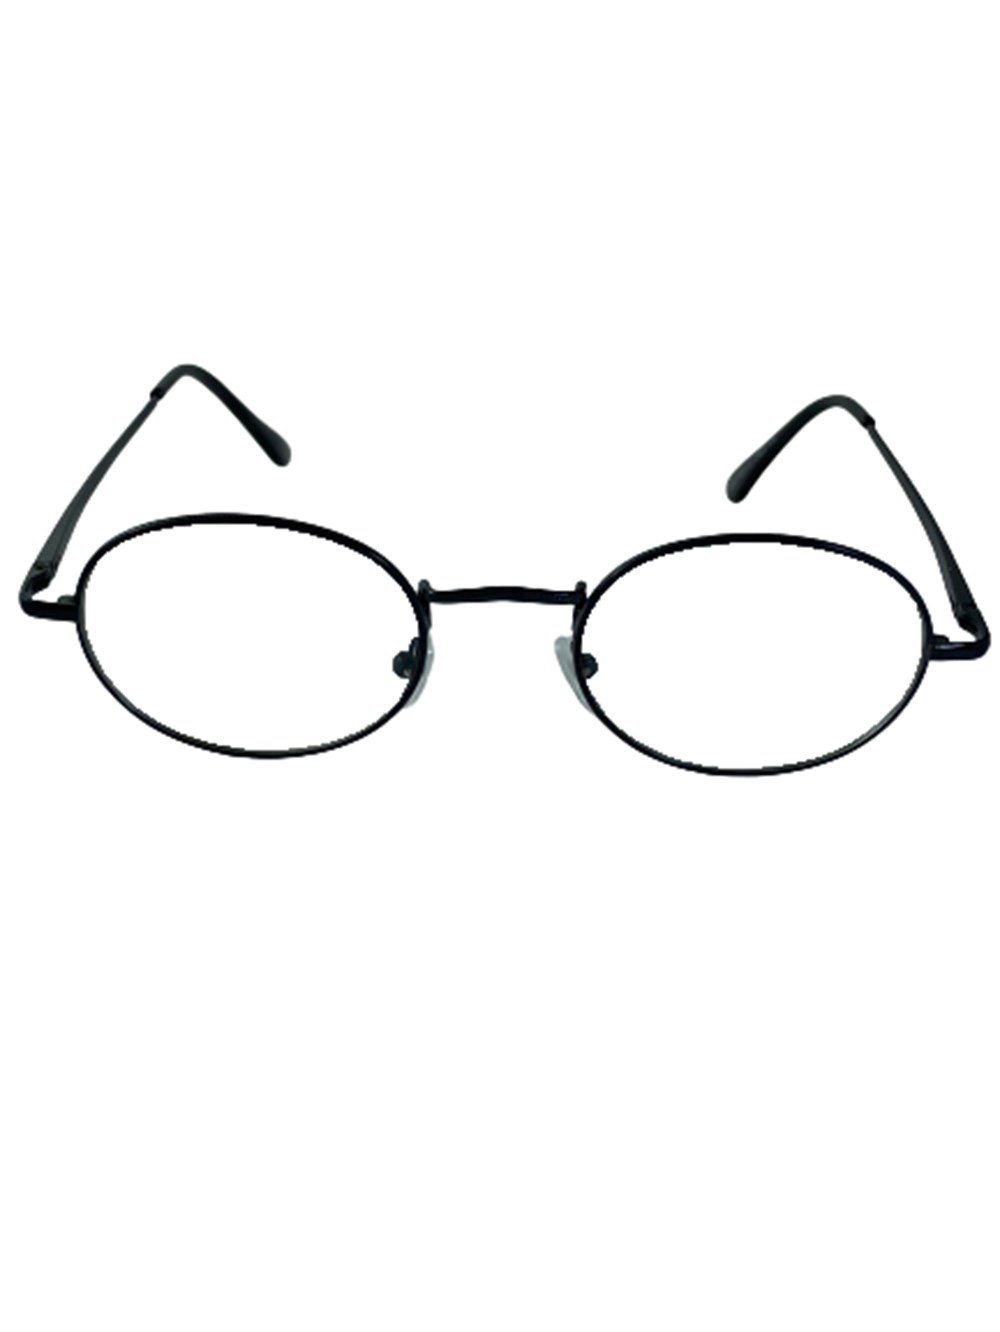 Numarasız Gözlük Modelleri